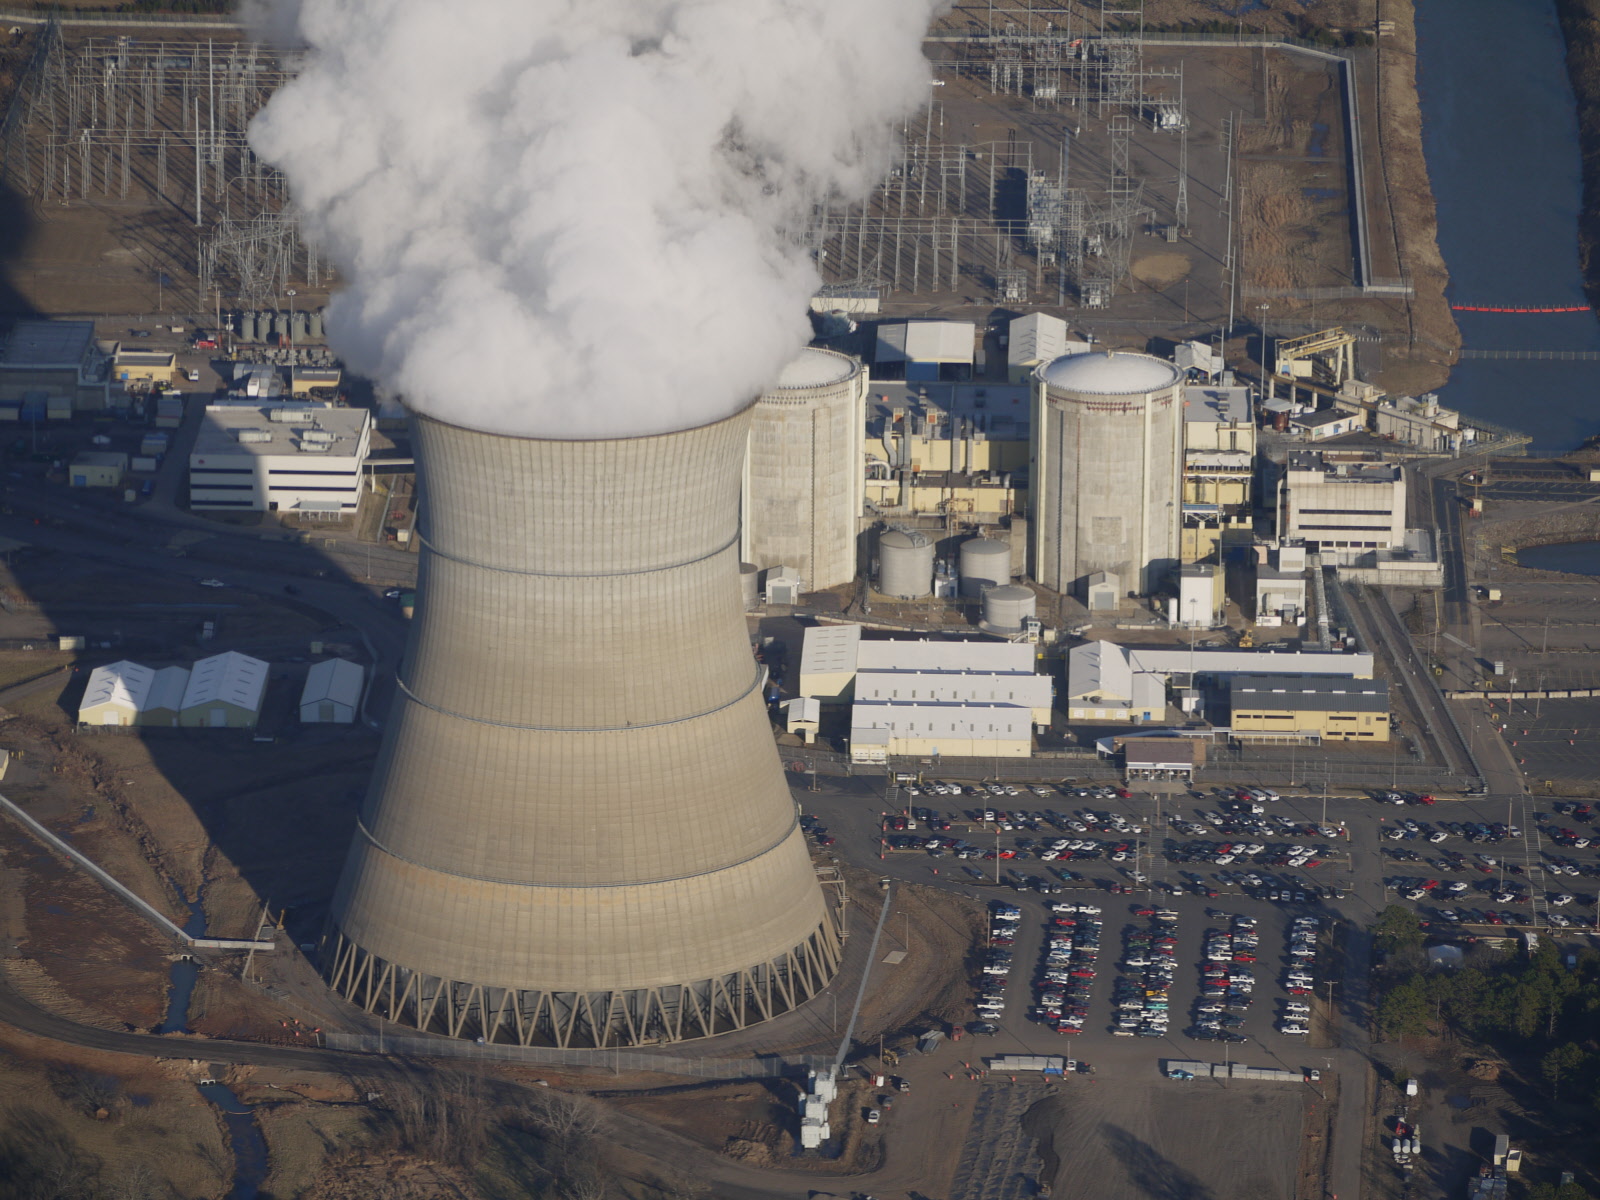 pembangkit listrik tenaga nuklir, pltn